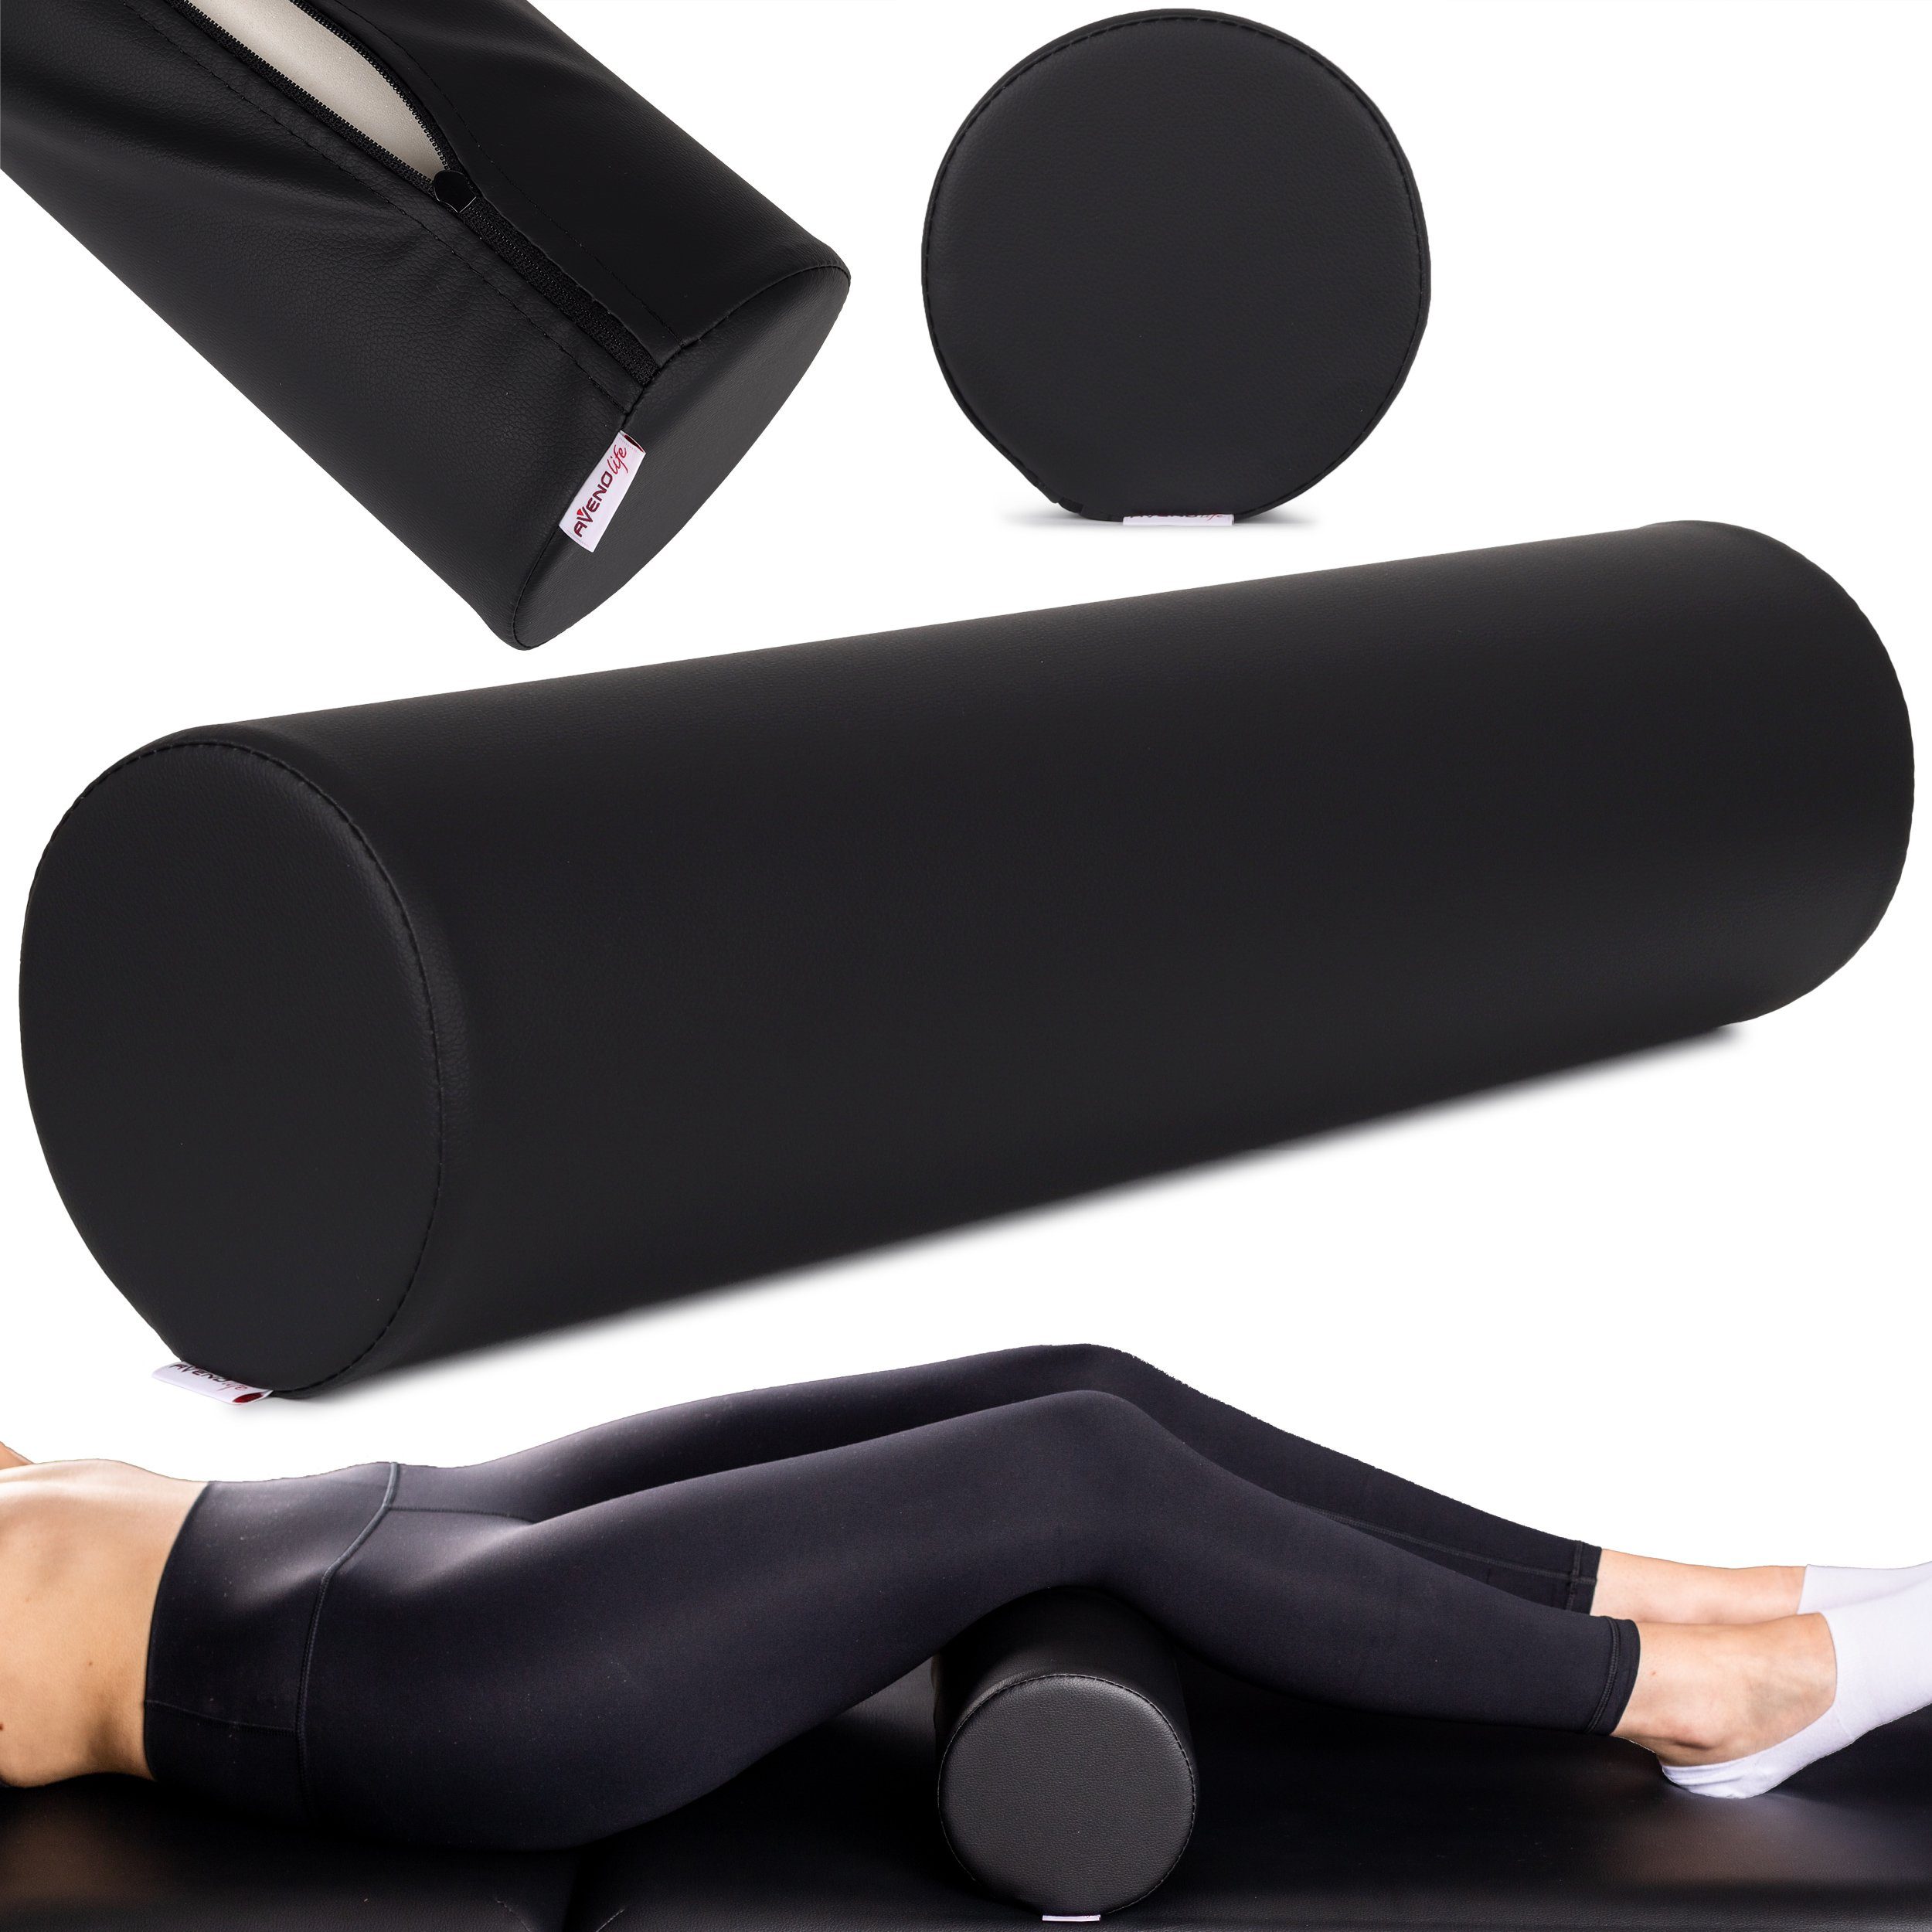 Habys Massageliege Vollrolle Knierolle Lagerungsrolle für Behandlungsliege 15 x 60cm Yoga